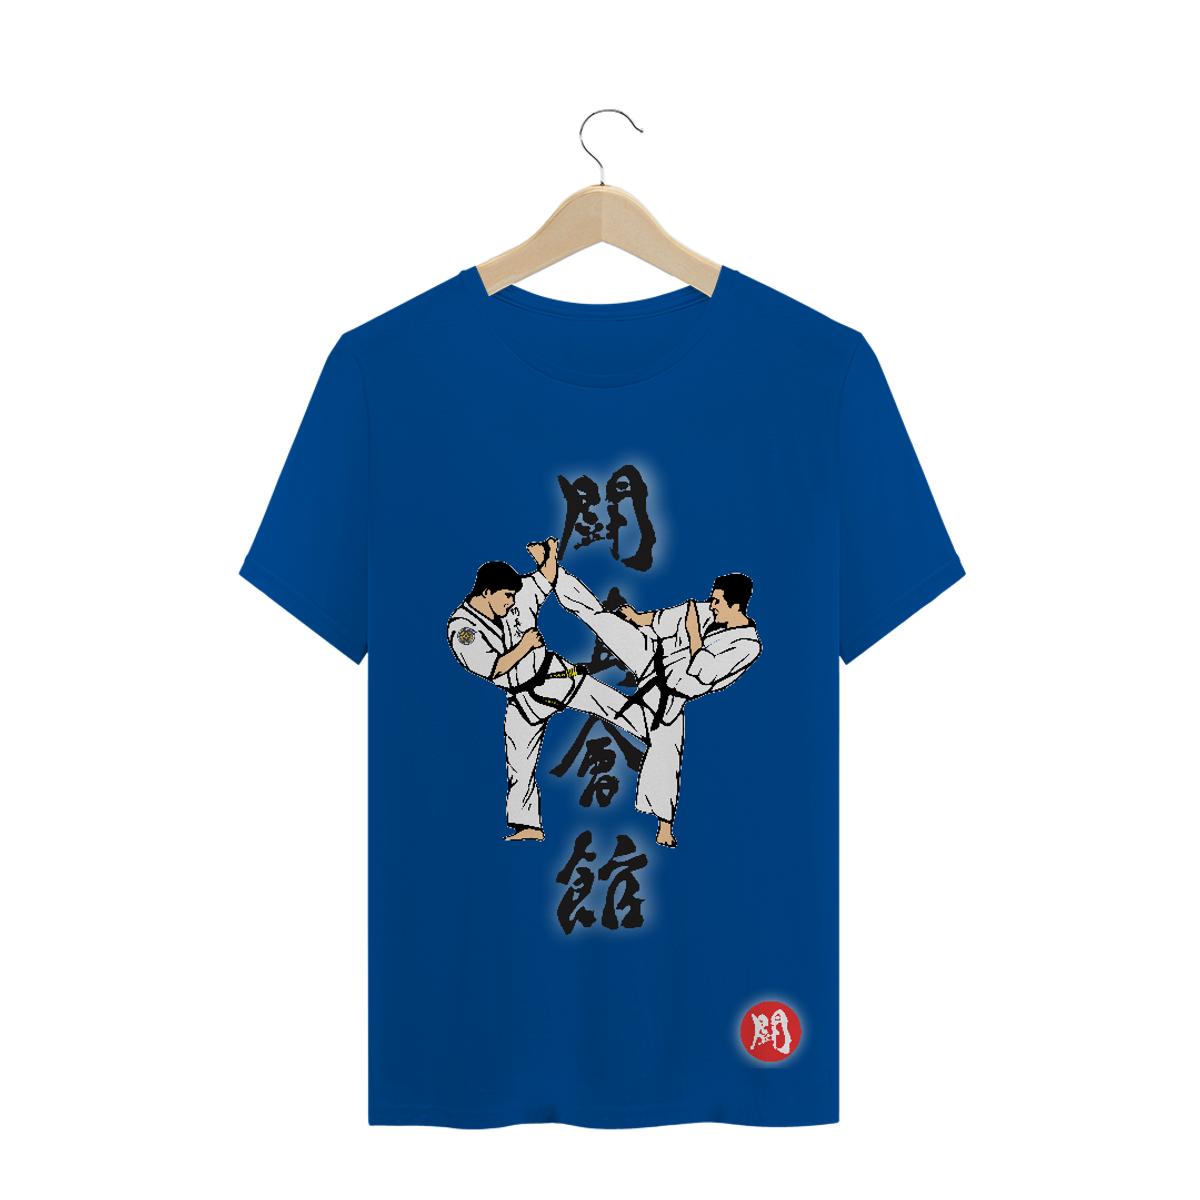 Nome do produto: Camiseta Masc. Karate Toshinkaikan [cores]